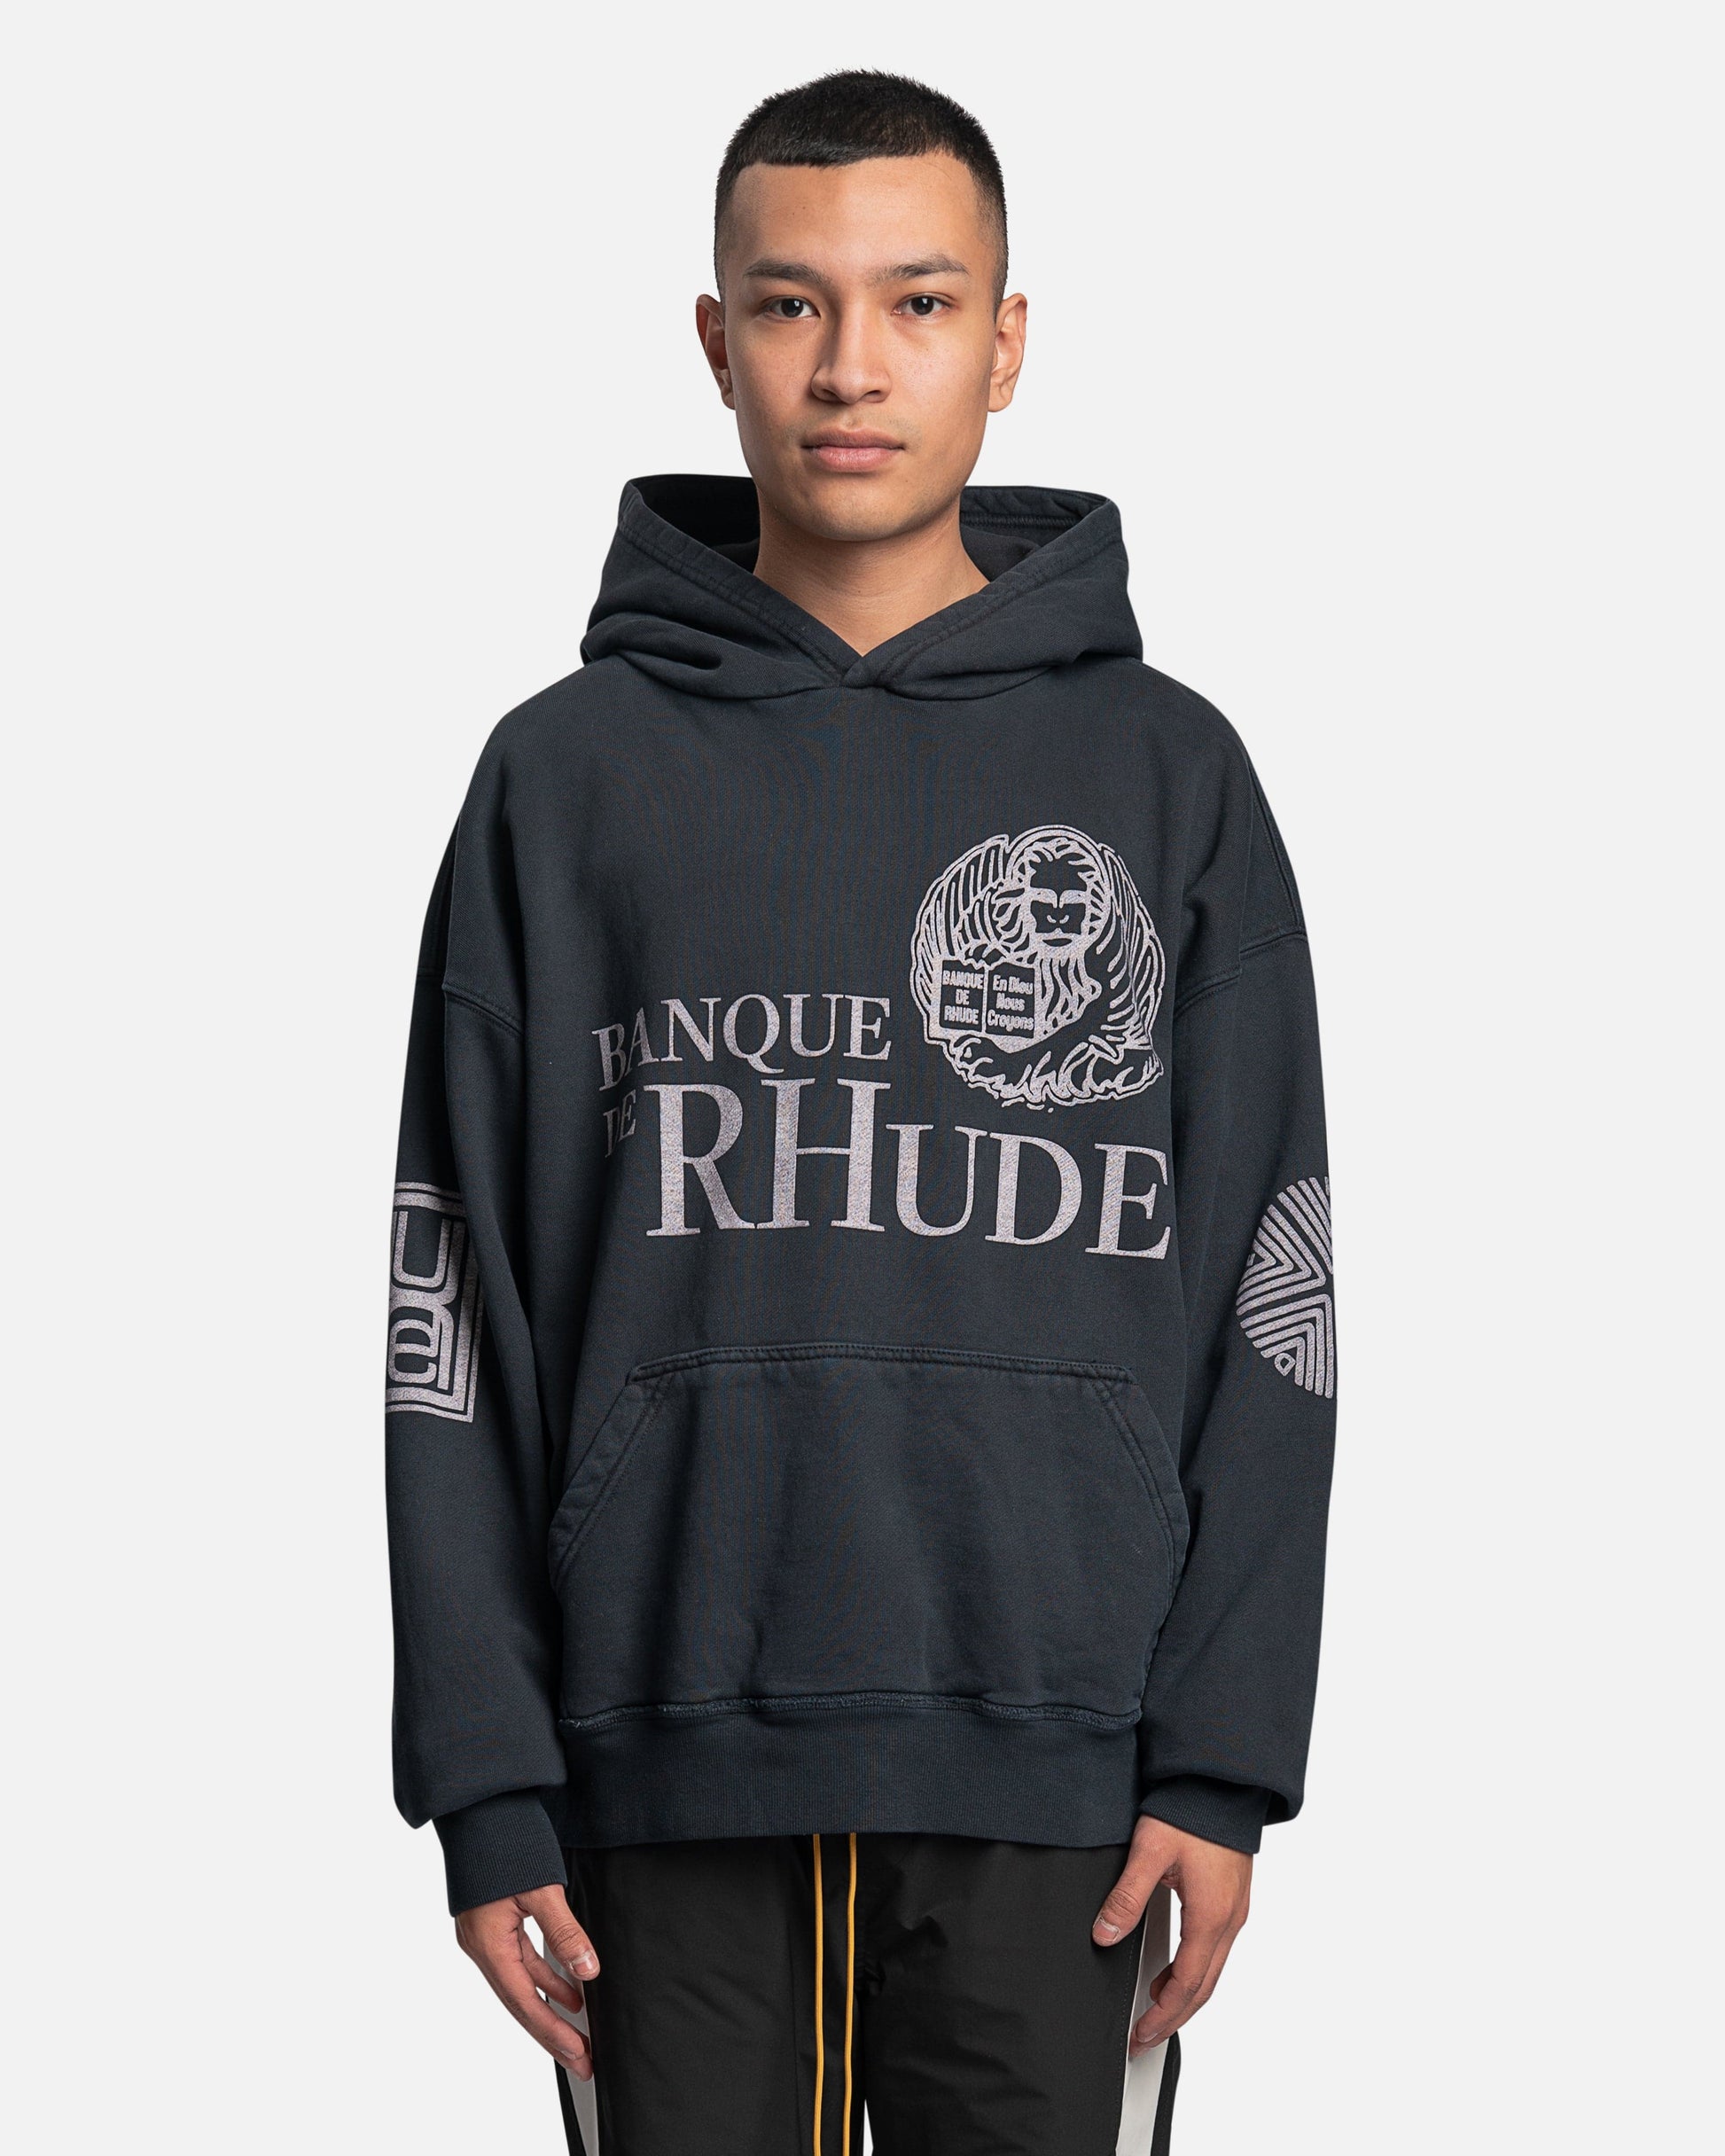 Rhude Men's Sweatshirts Banque de Rhude Hoodie in Vintage Black